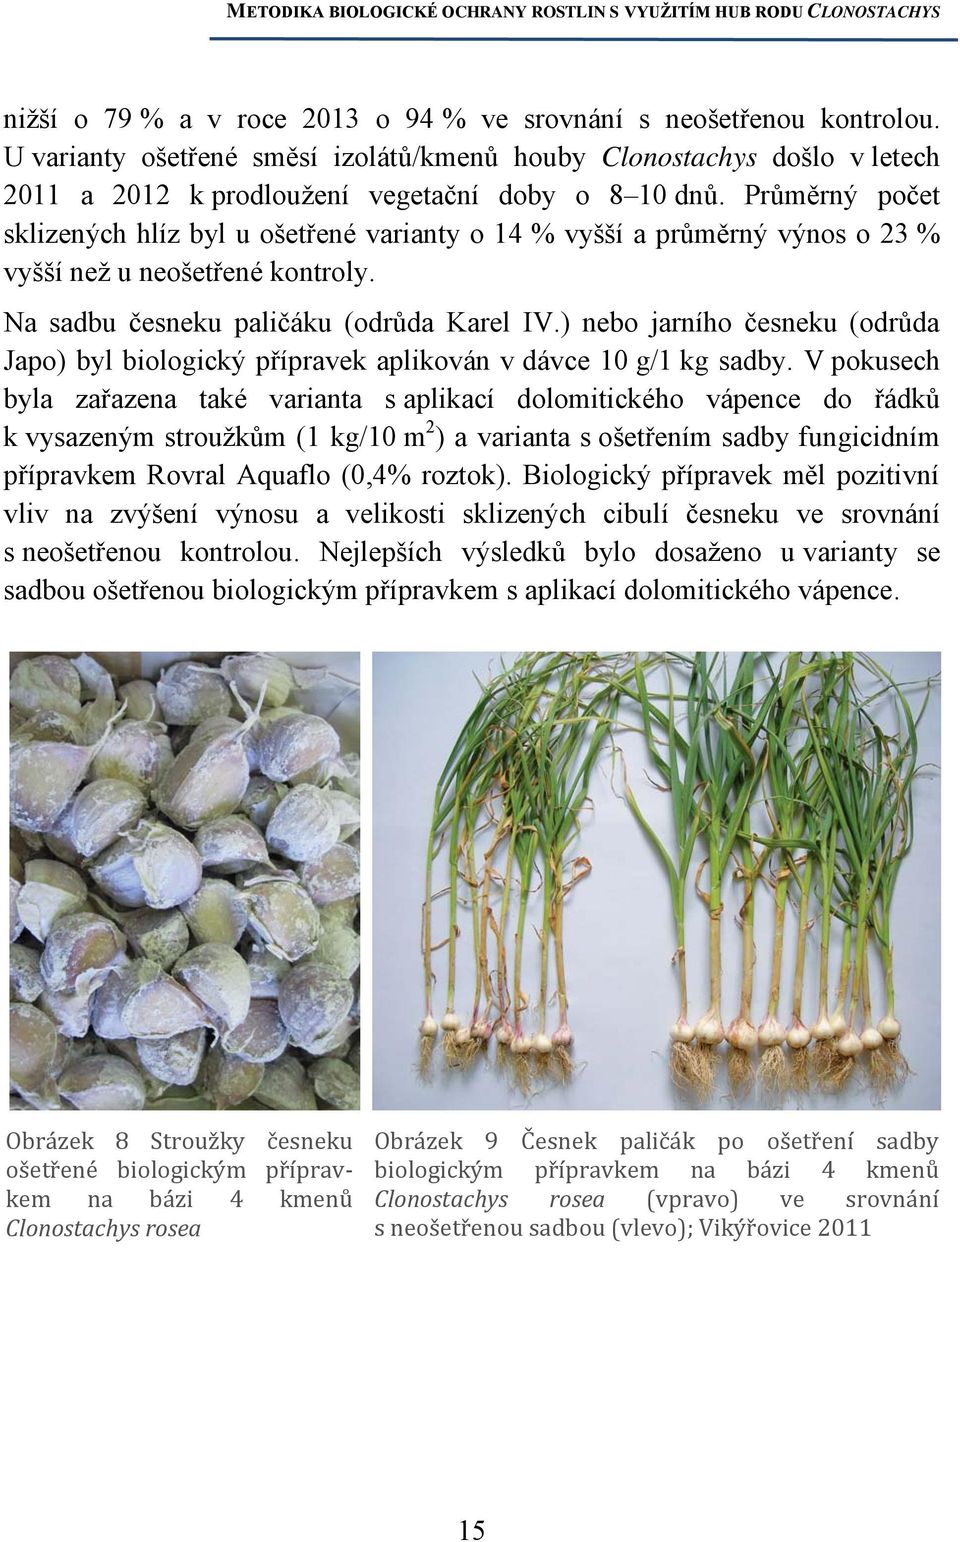 ) nebo jarního česneku (odrůda Japo) byl biologický přípravek aplikován v dávce 10 g/1 kg sadby.